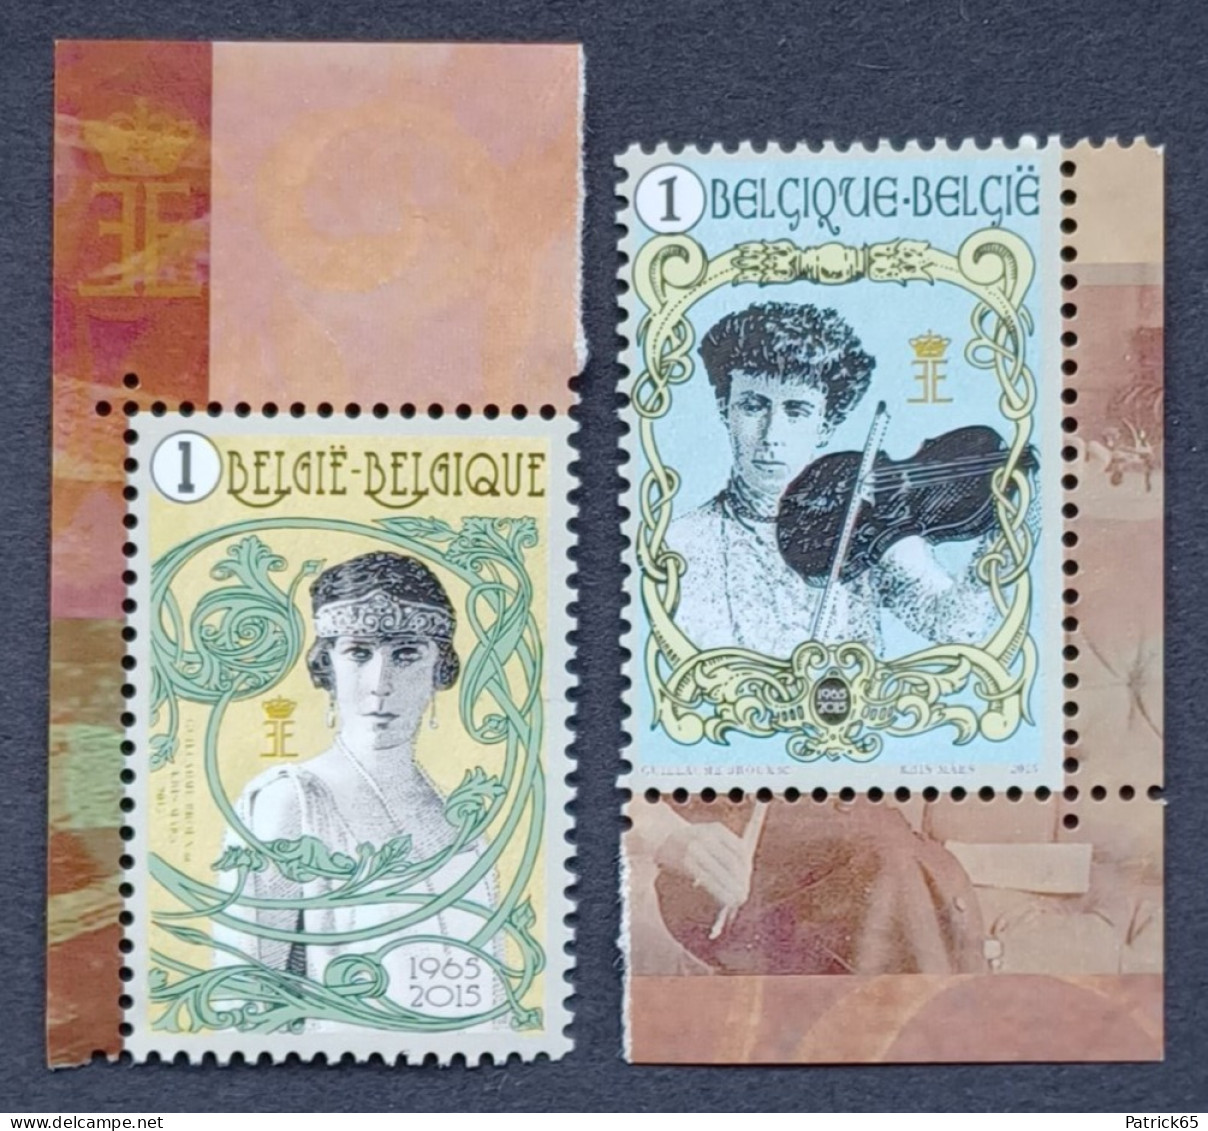 Belgie 2015 Koningin Elisabeth Obp.nrs.4520/21 MNH -- Postfris - Unused Stamps